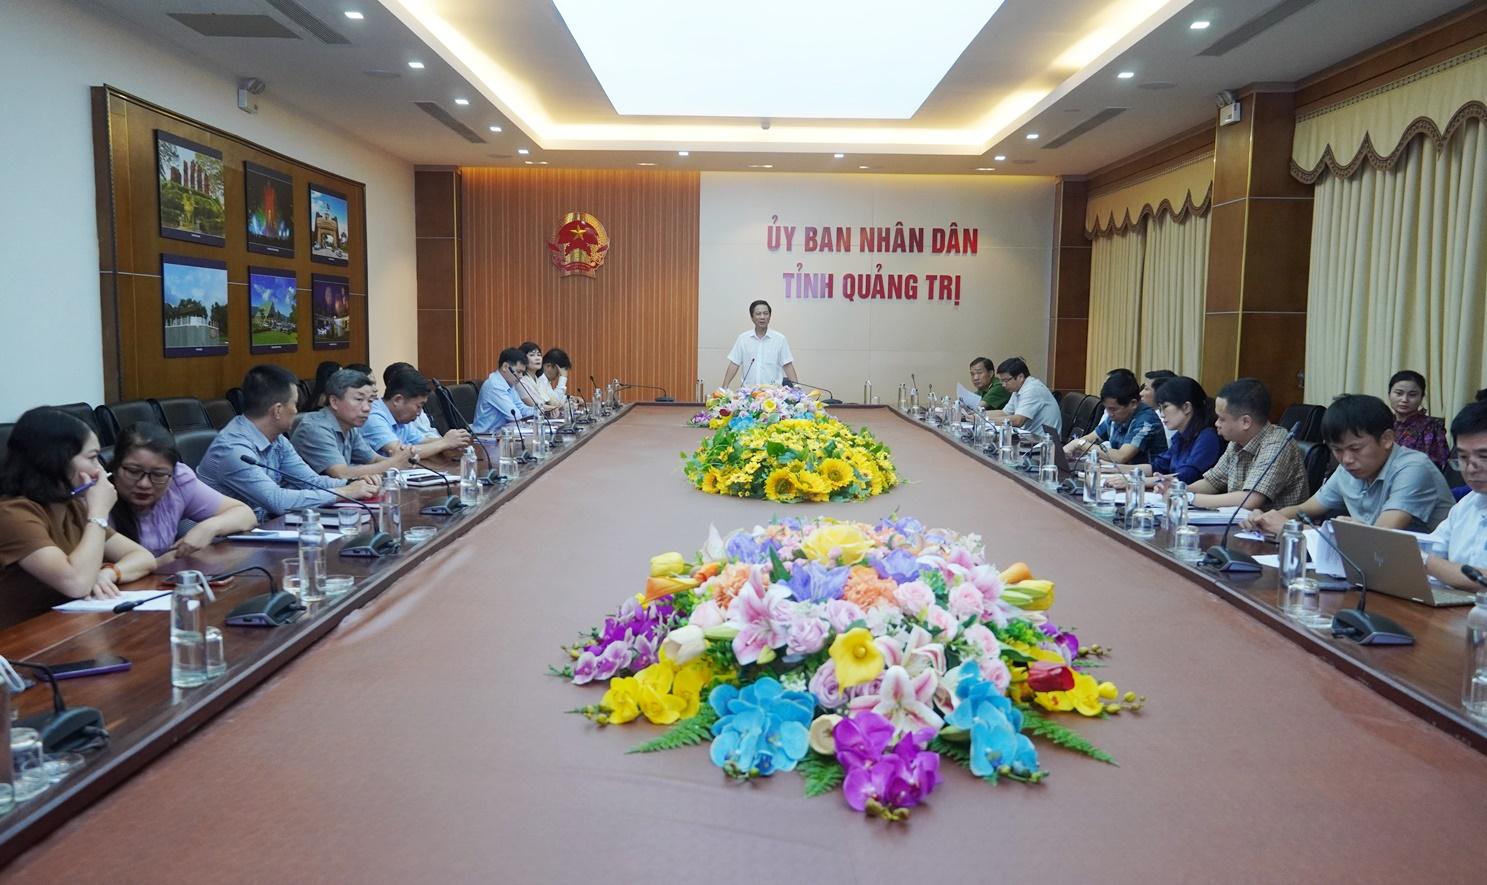 Phó Chủ tịch UBND tỉnh Quảng Trị Hoàng Nam chủ trì cuộc họp. Ảnh: Hồng Hà